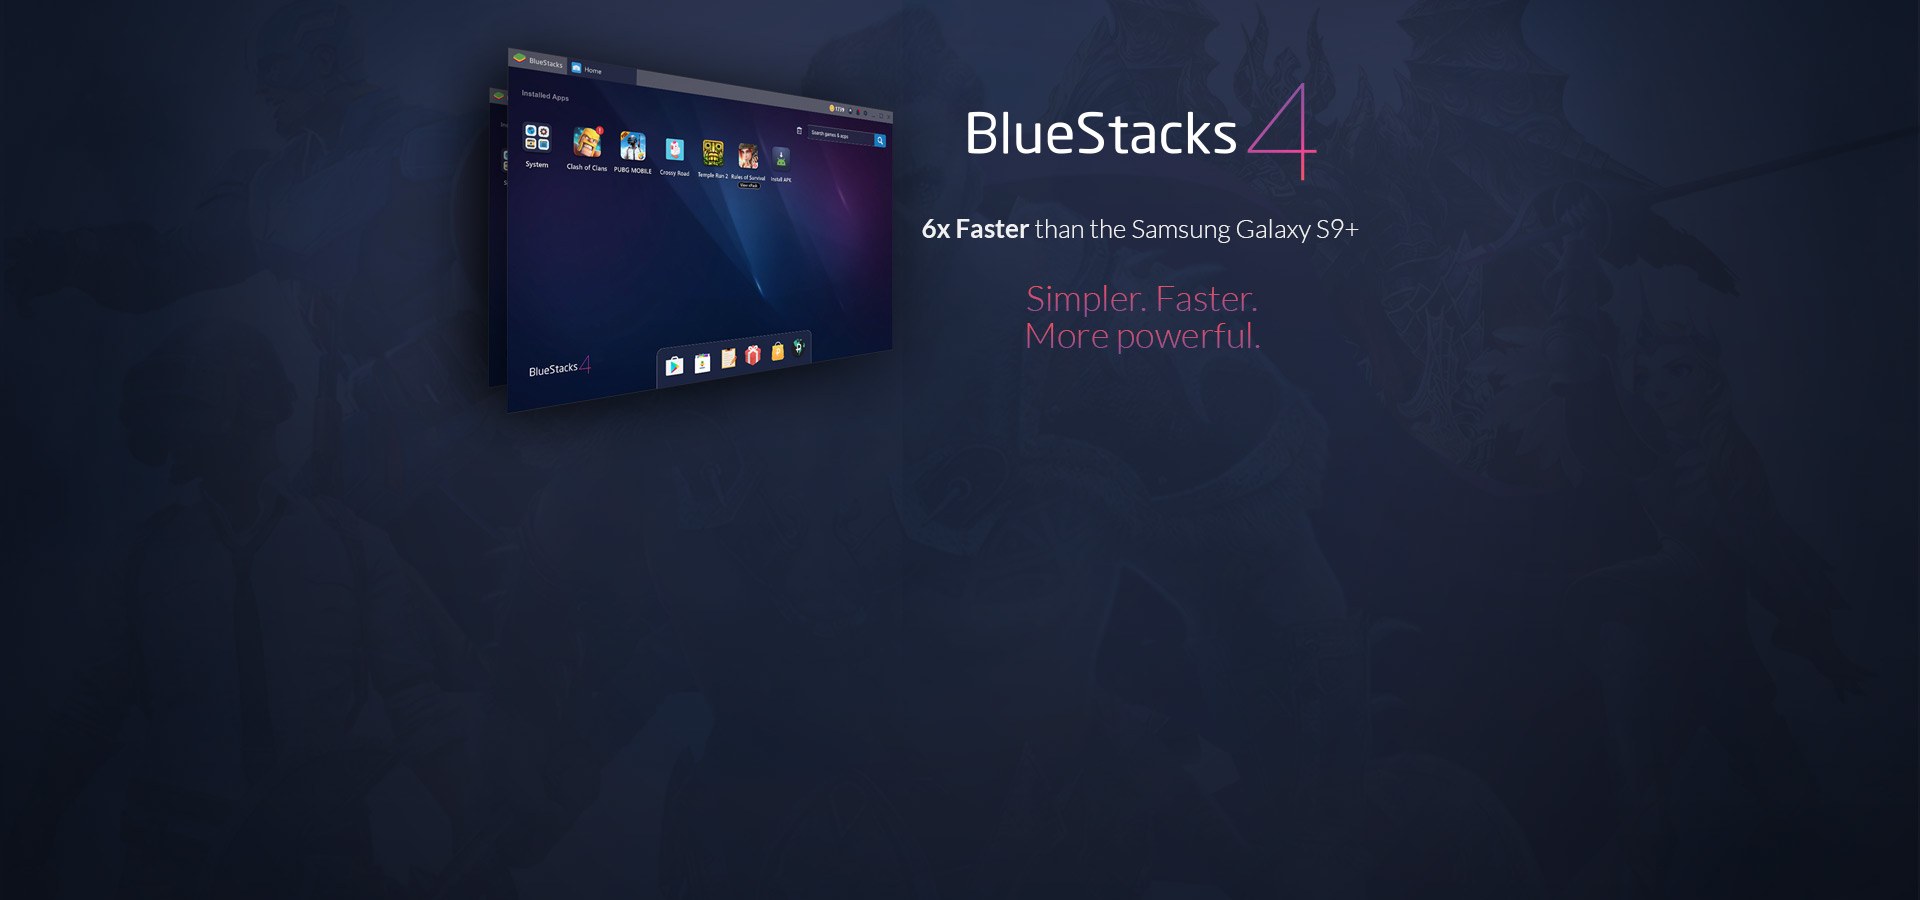 bluestacks offline installer untuk komputer 54 bit